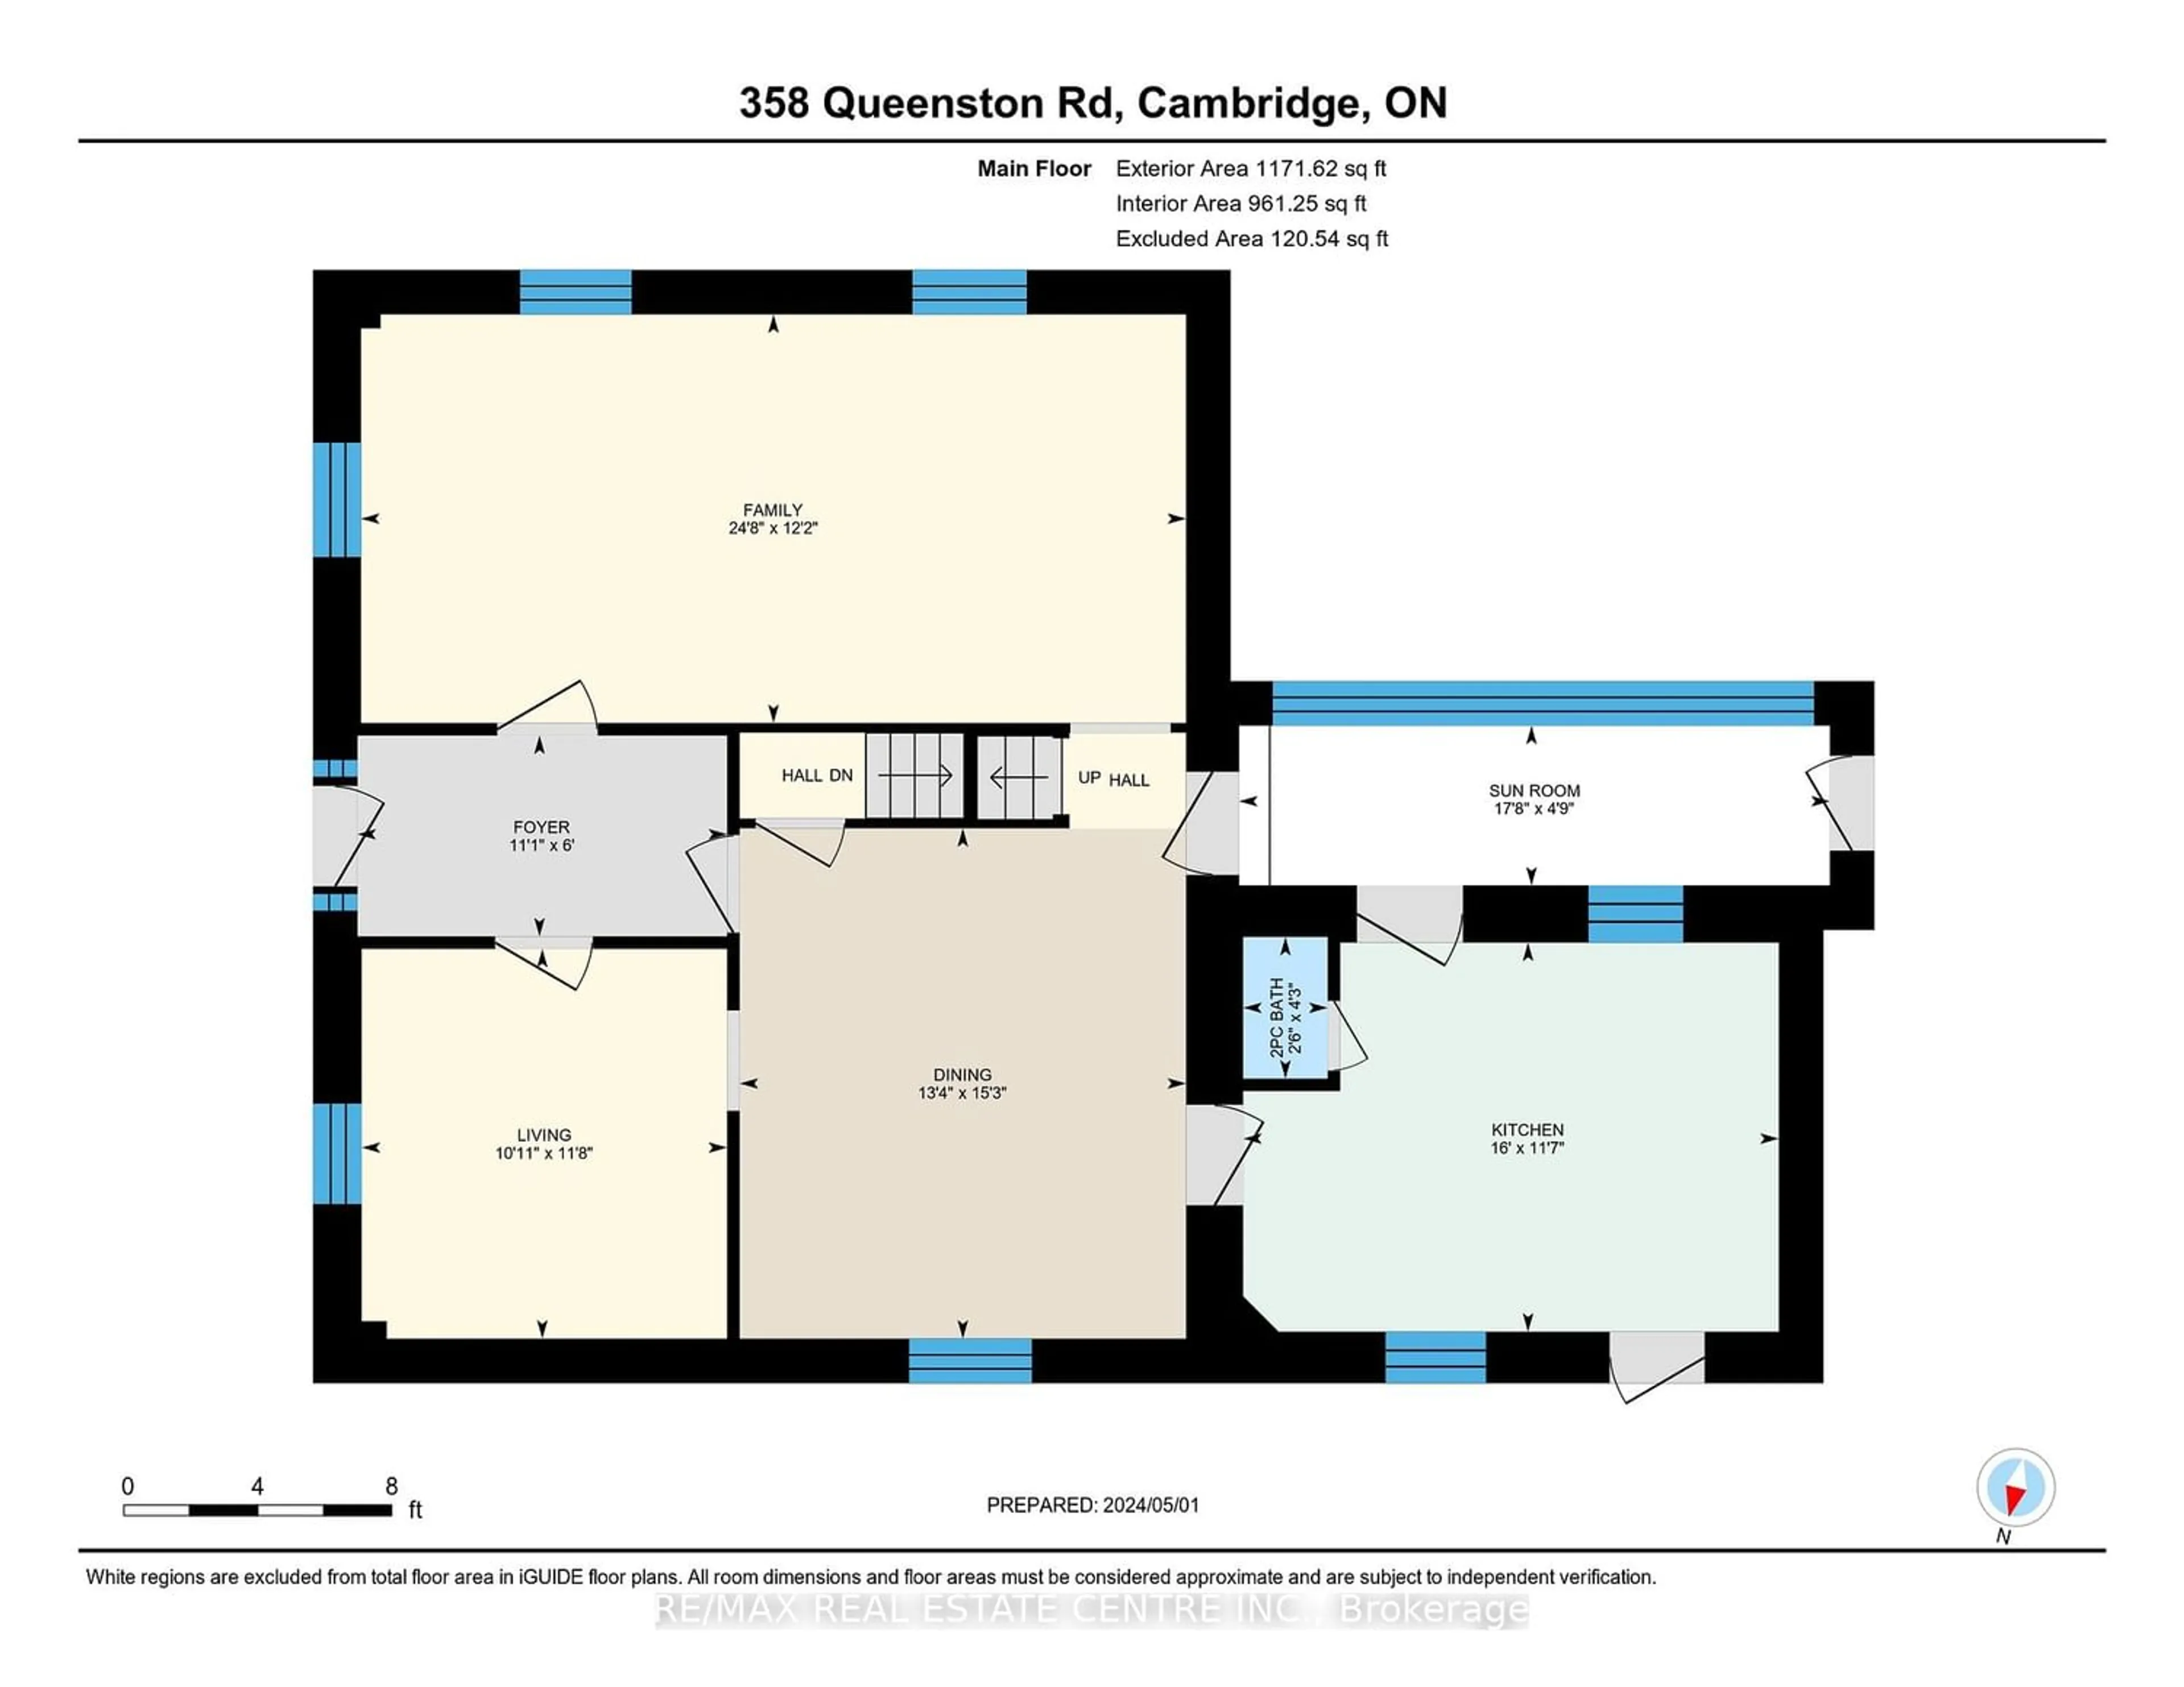 Floor plan for 358 Queenston Rd, Cambridge Ontario N3H 3J4